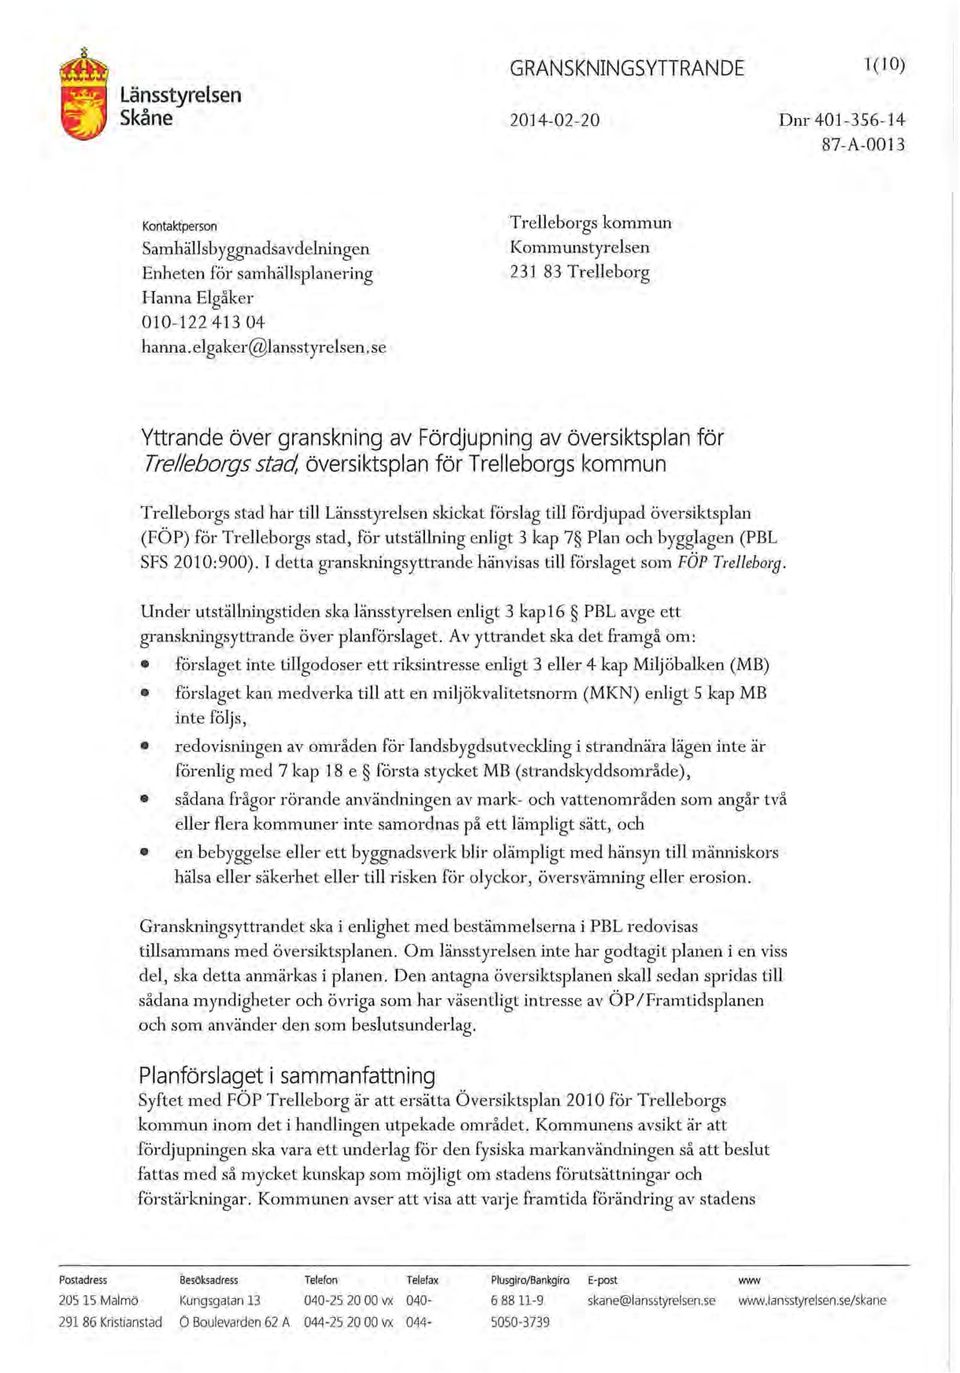 skickat förslag till fördjupad översiktsplan (FÖP) för Trelleborgs stad, för utställning enligt 3 kap 7 Plan och bygglagen (PBL SFS 2010:900).